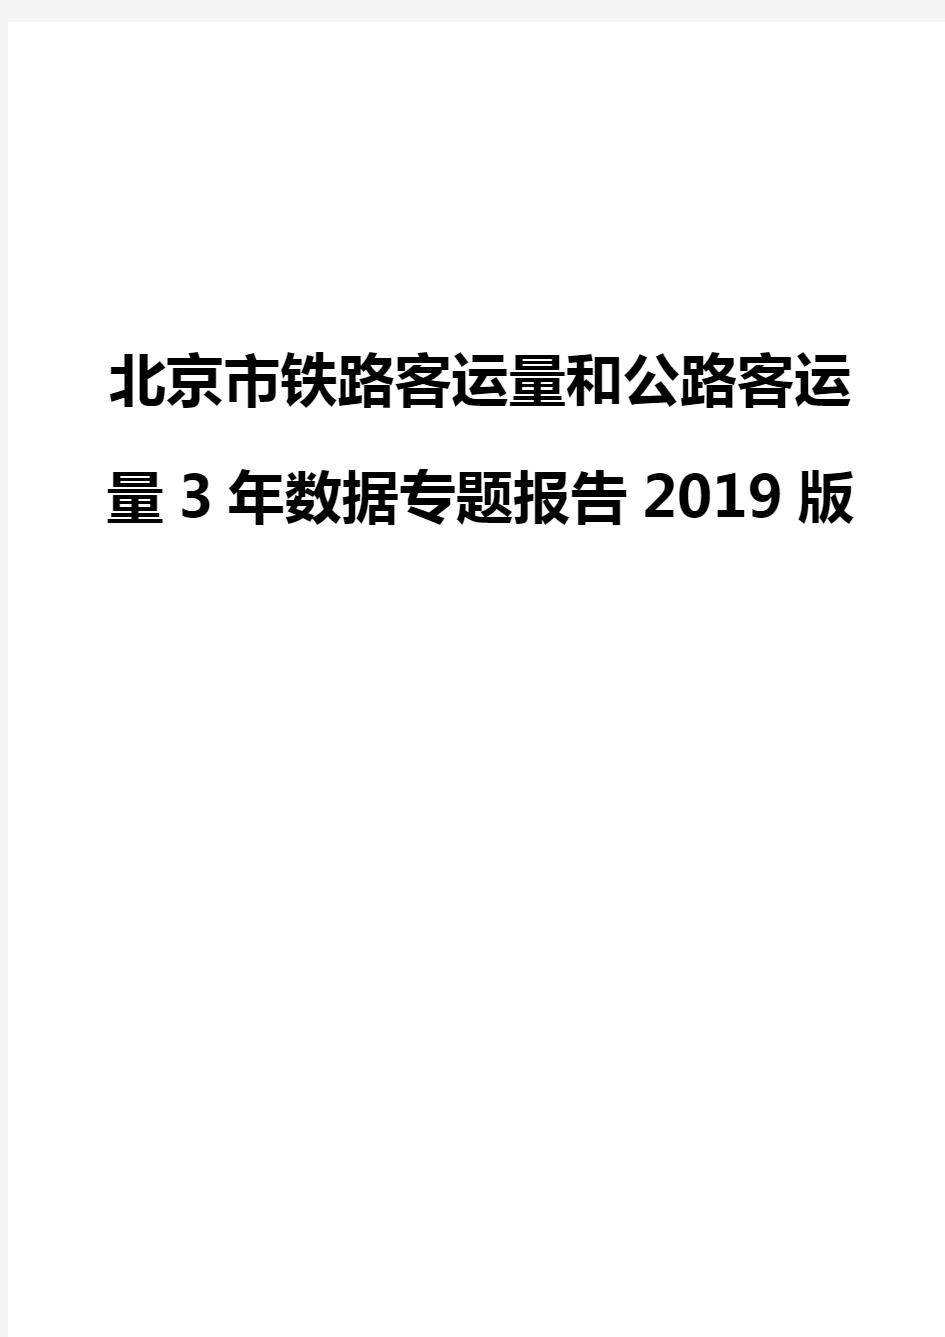 北京市铁路客运量和公路客运量3年数据专题报告2019版